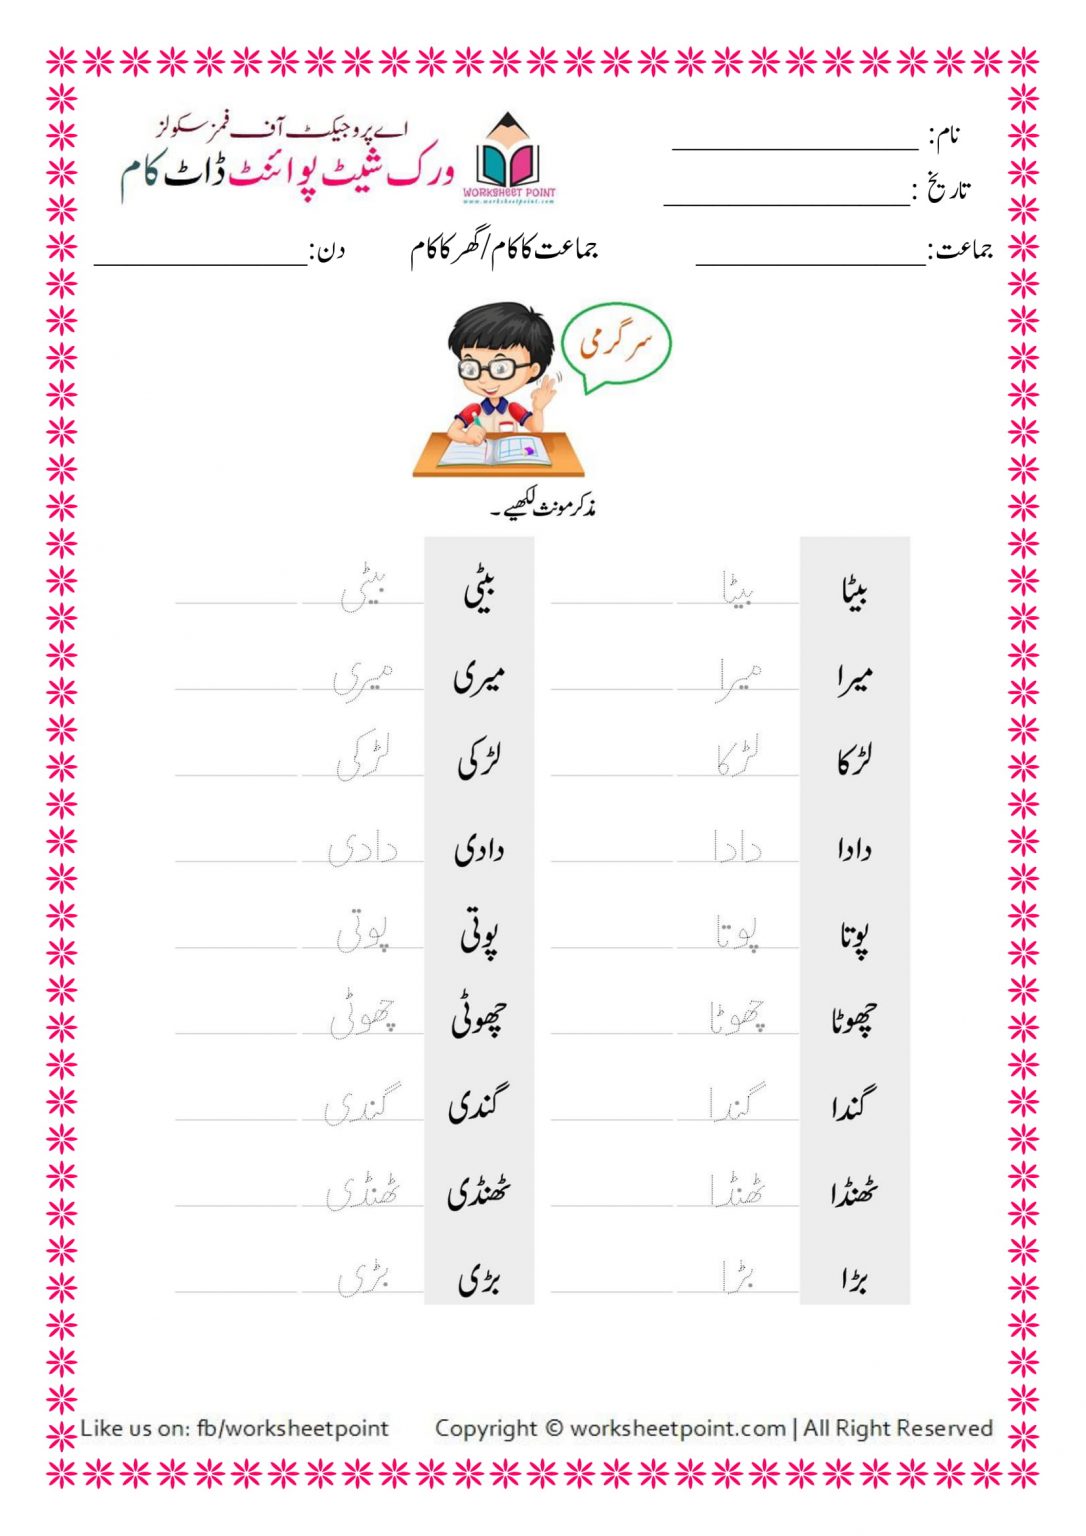 printable-missing-number-worksheet-for-class-kg-1-shamim-grammar-urdu-kindergarten-worksheets